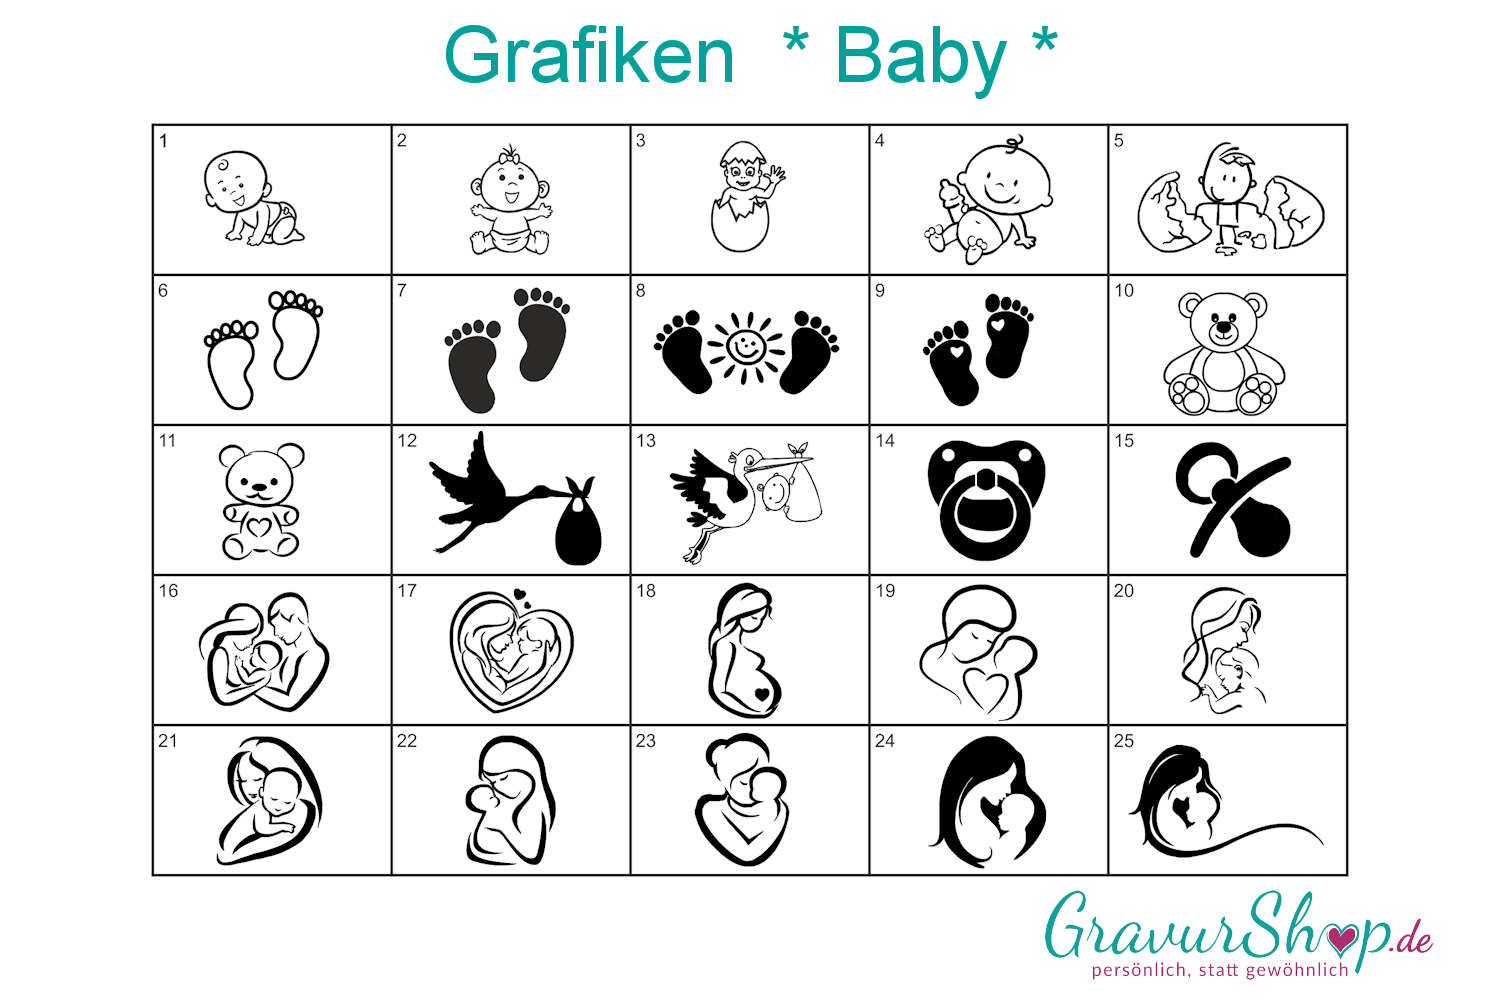 Baby Geburt Grafiken Zum Gravieren Gravurshop